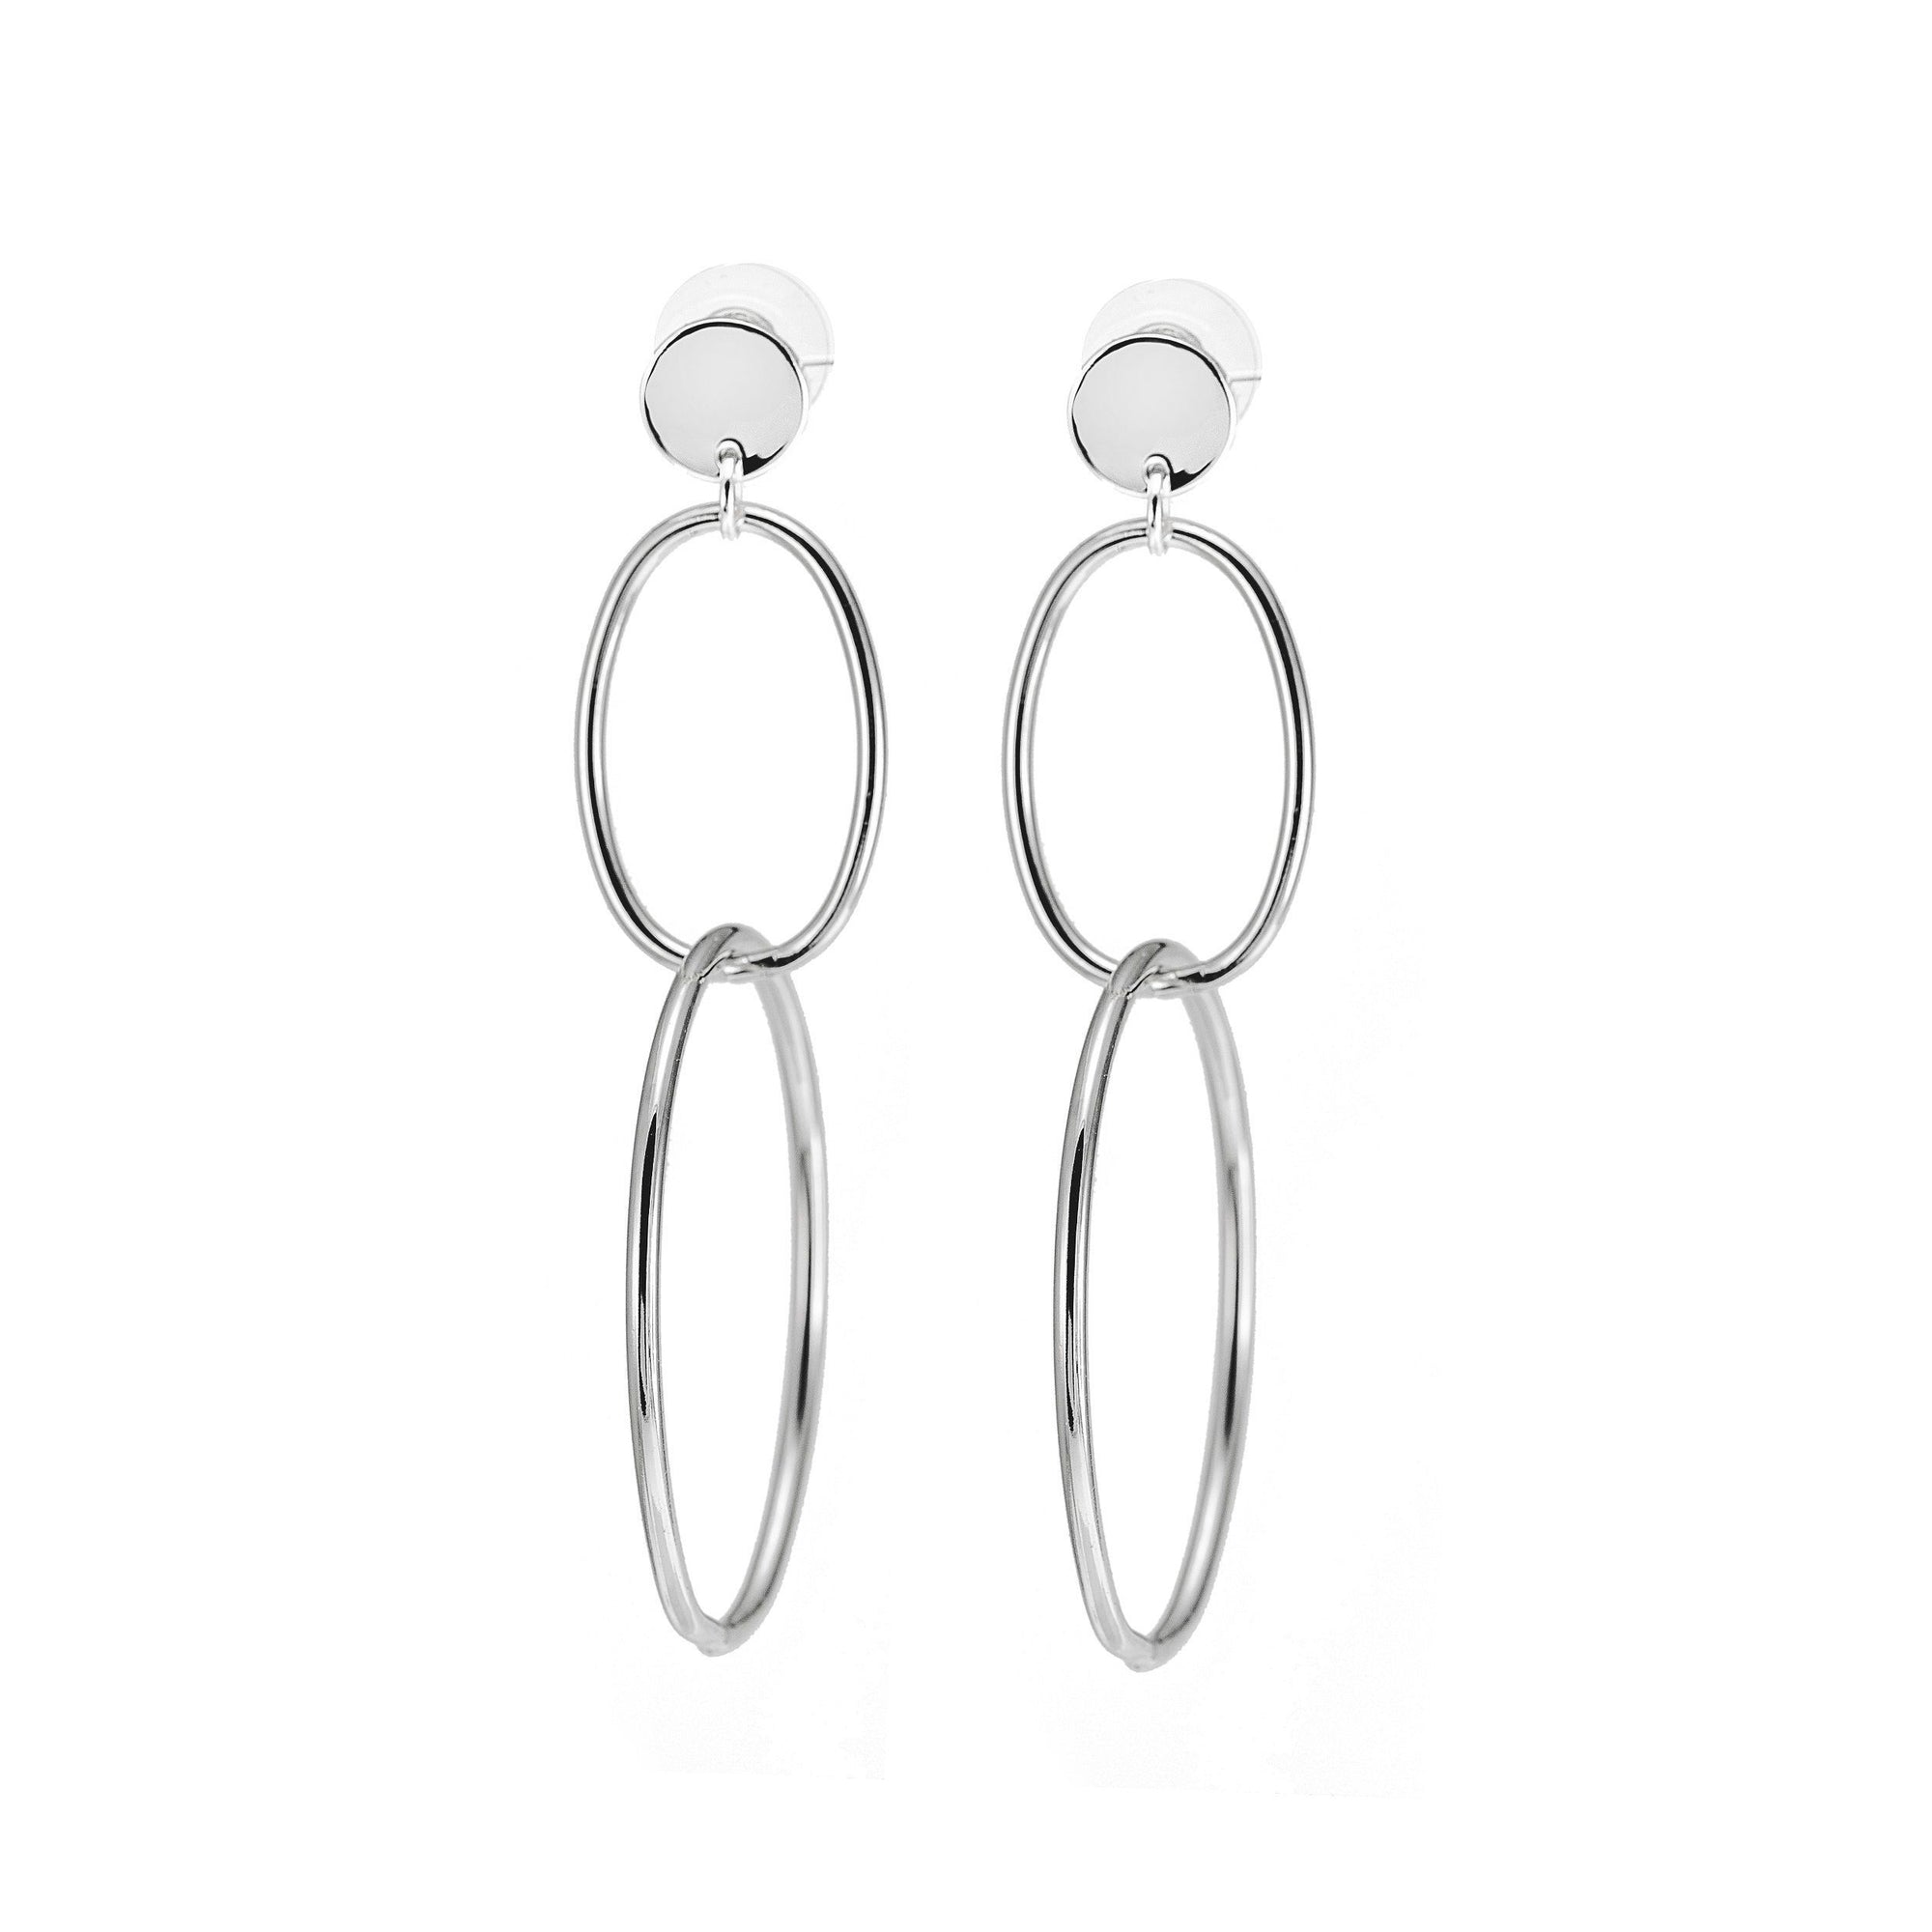 Merx jewellery double hoop dangling long earrings